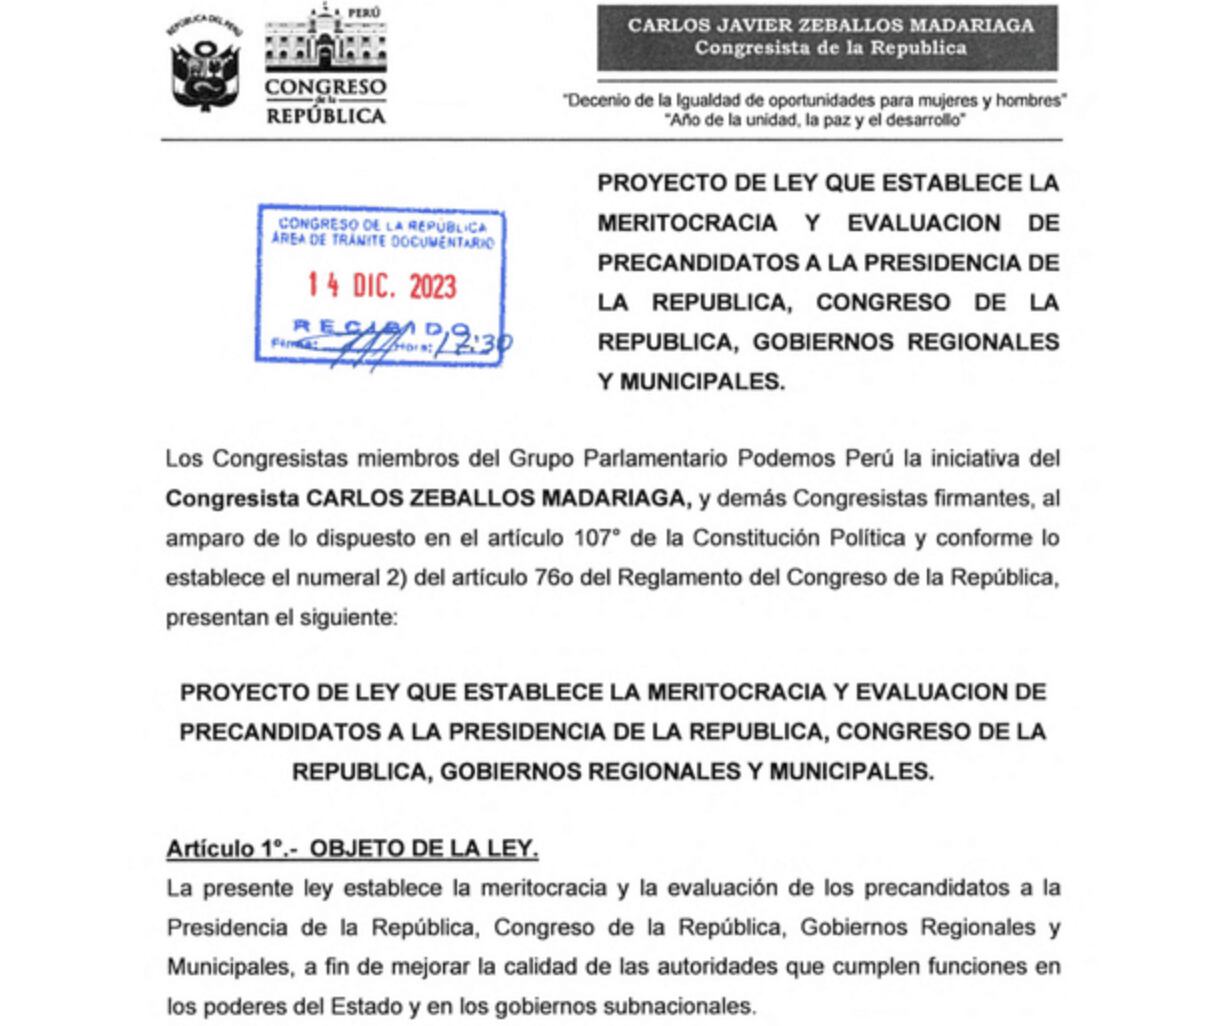 Proyecto de ley presentado por congresista de Podemos Perú.